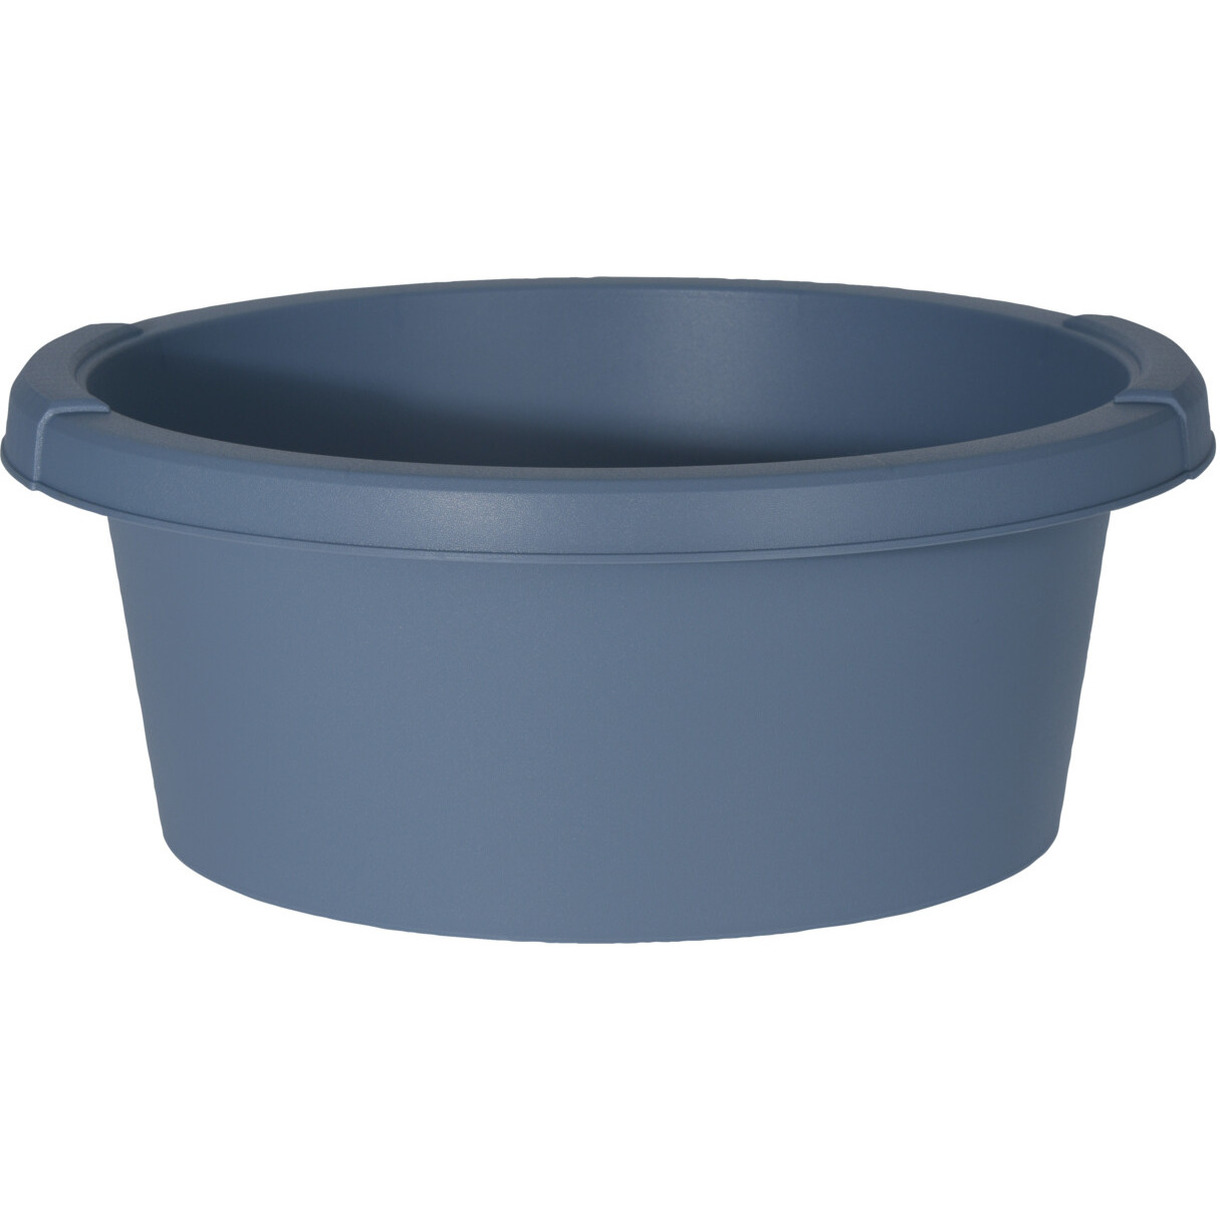 Blauwe afwasteil-afwasbak rond kunststof 6 liter